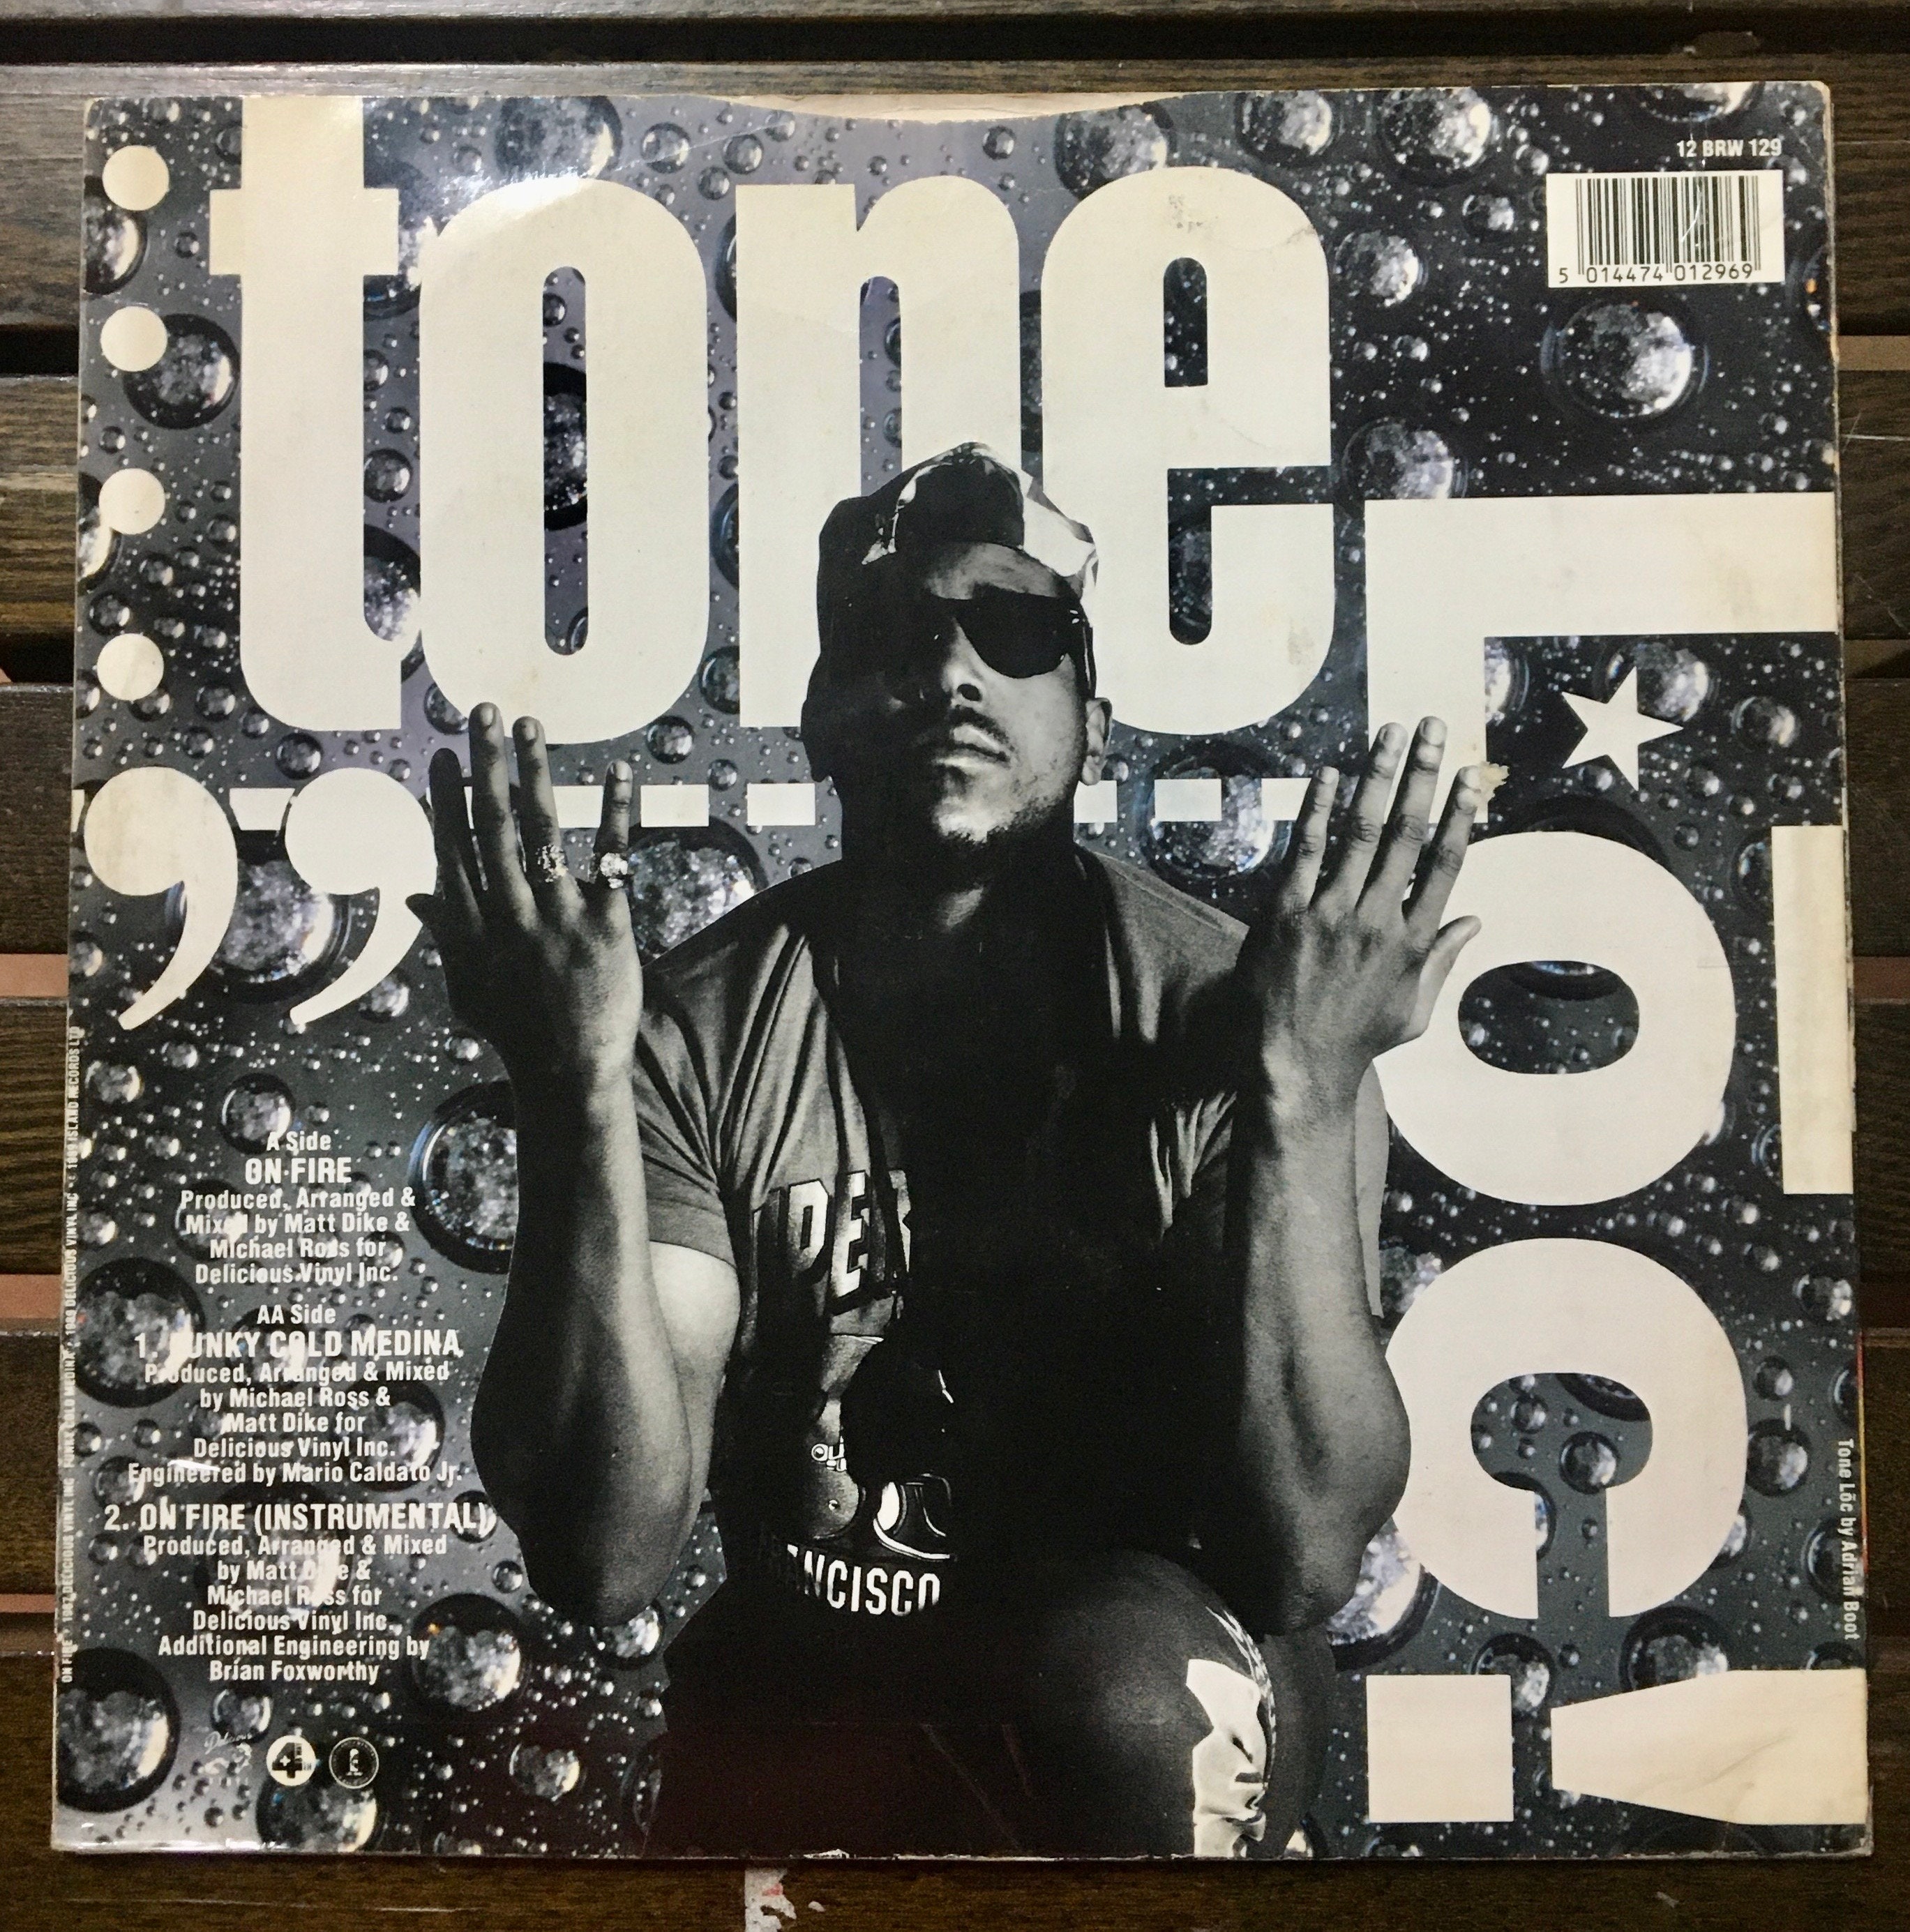 1989 Tone Lōc on Fire / Funky Cold Medina - Etsy